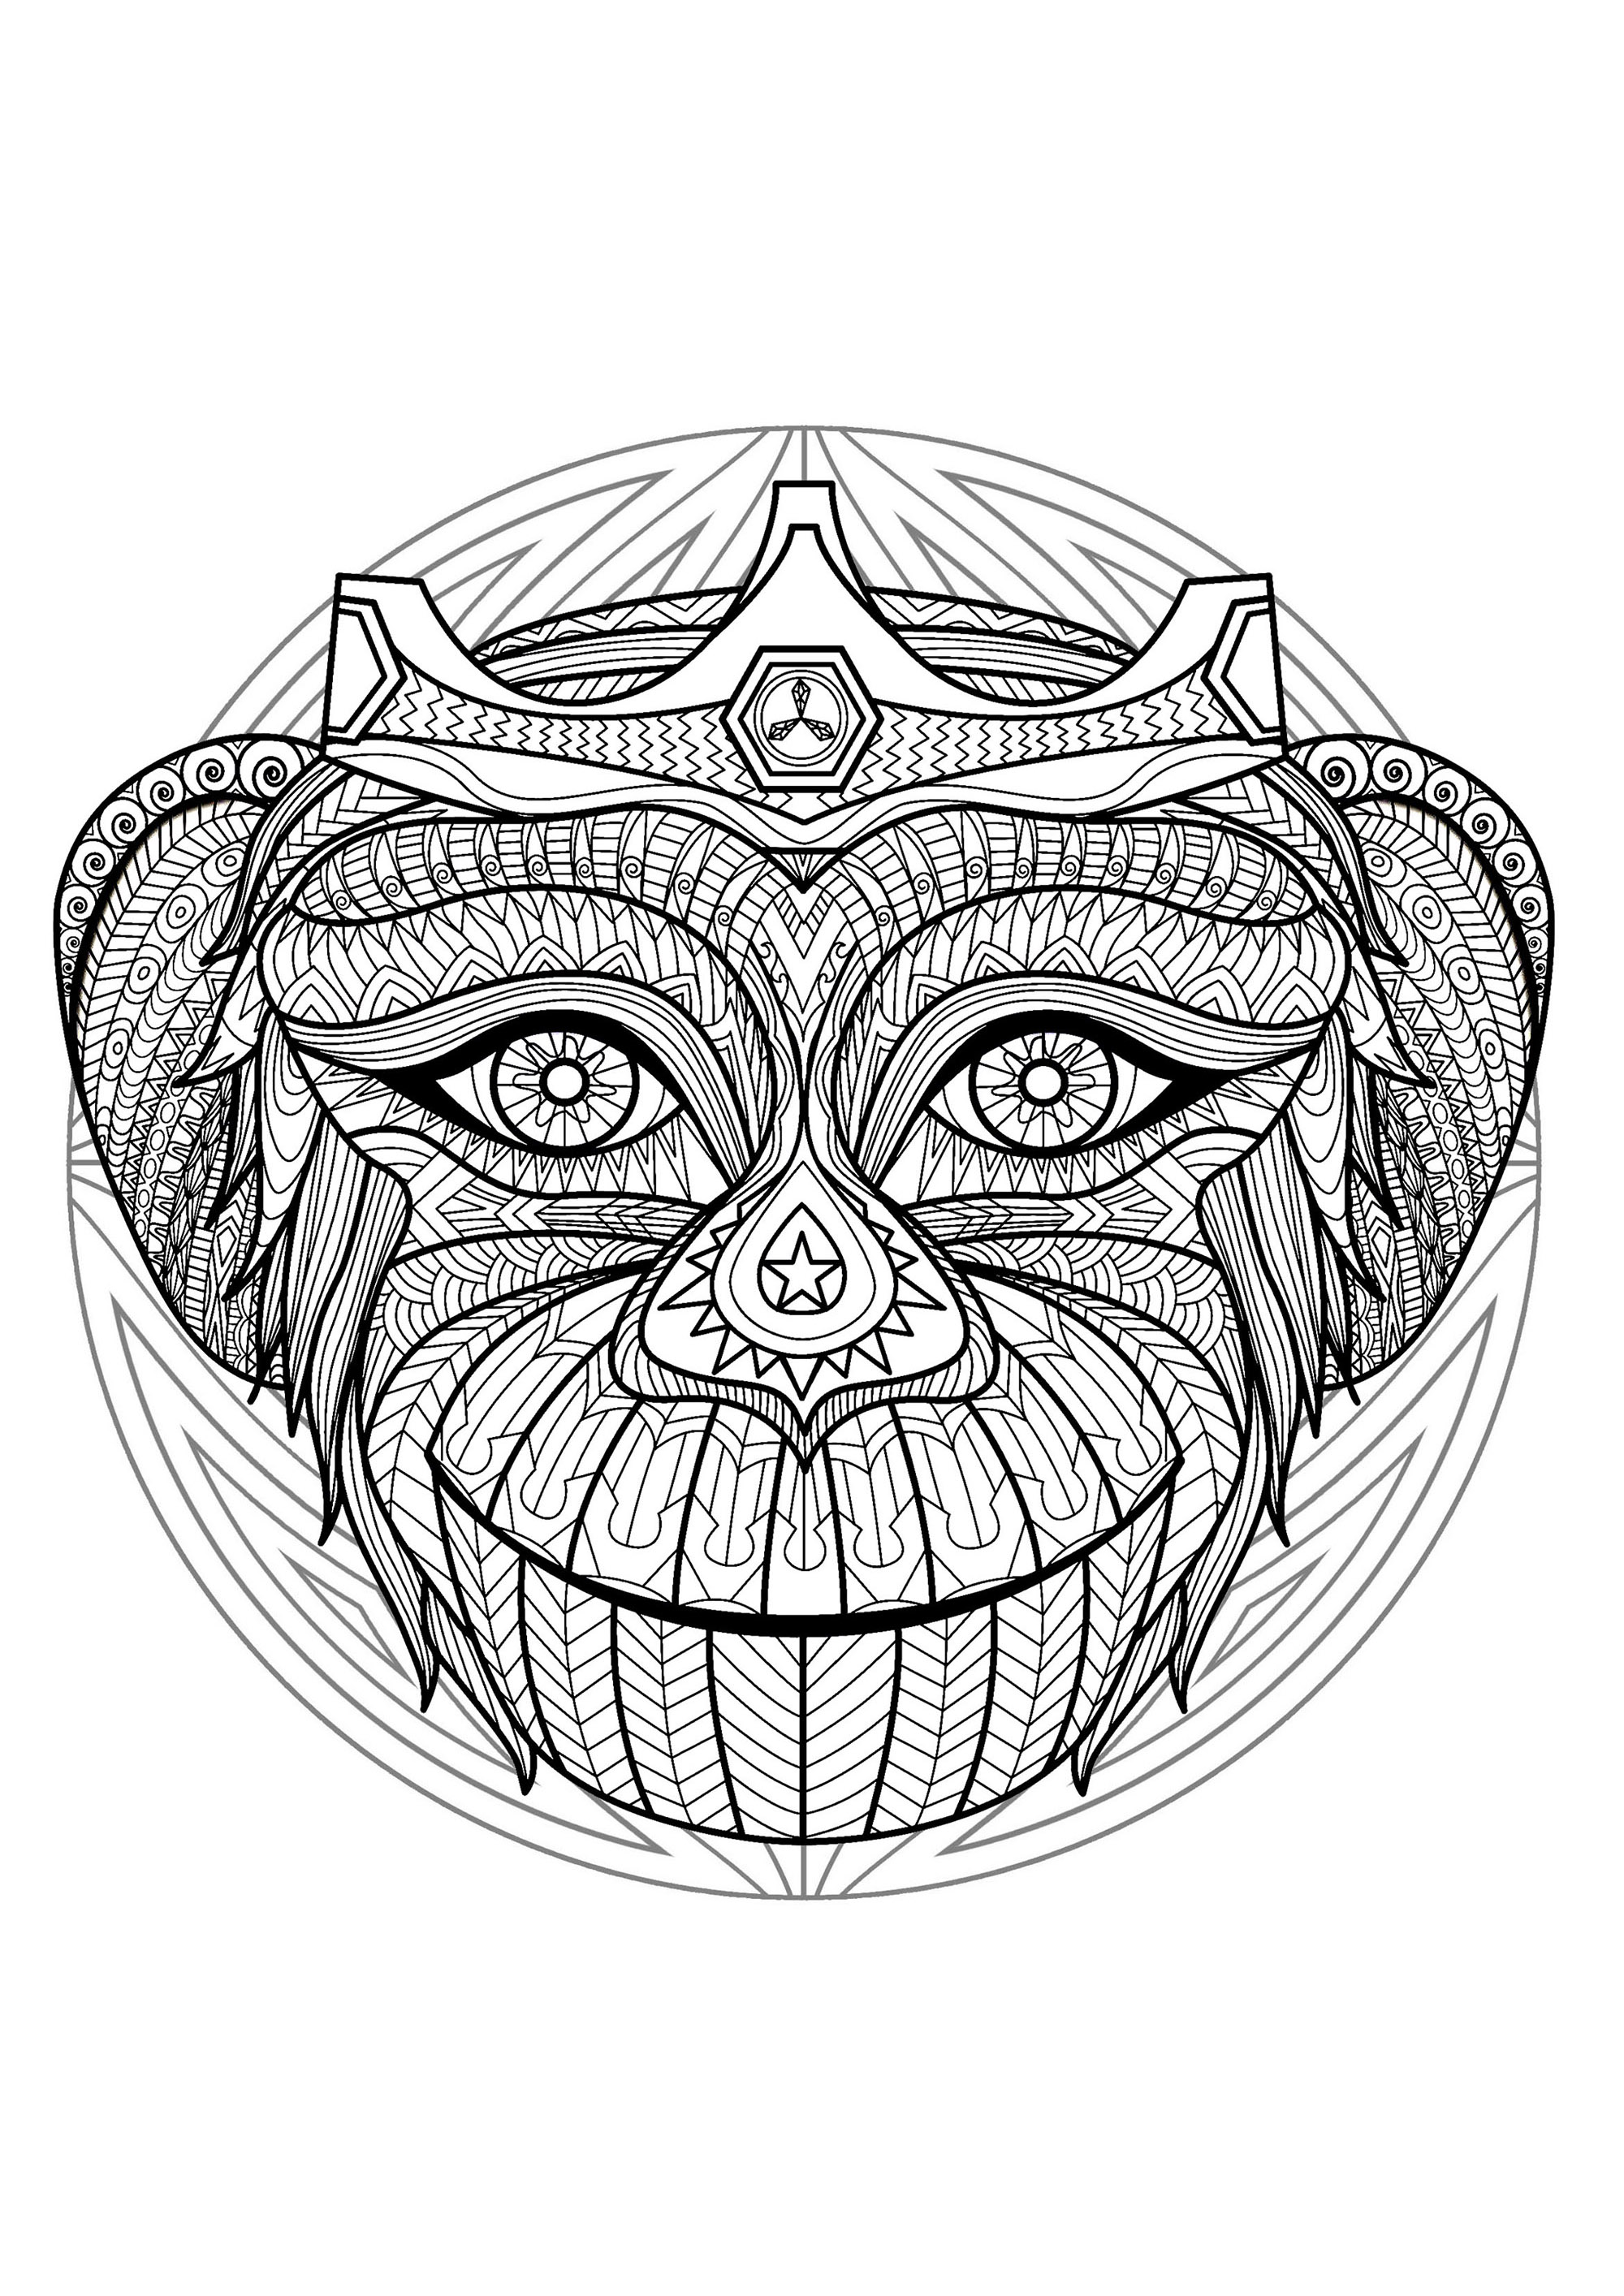 Mandala e cabeça de macaco. Muitos pequenos pormenores e áreas bastante pequenas, para uma Mandala muito original e harmoniosa.